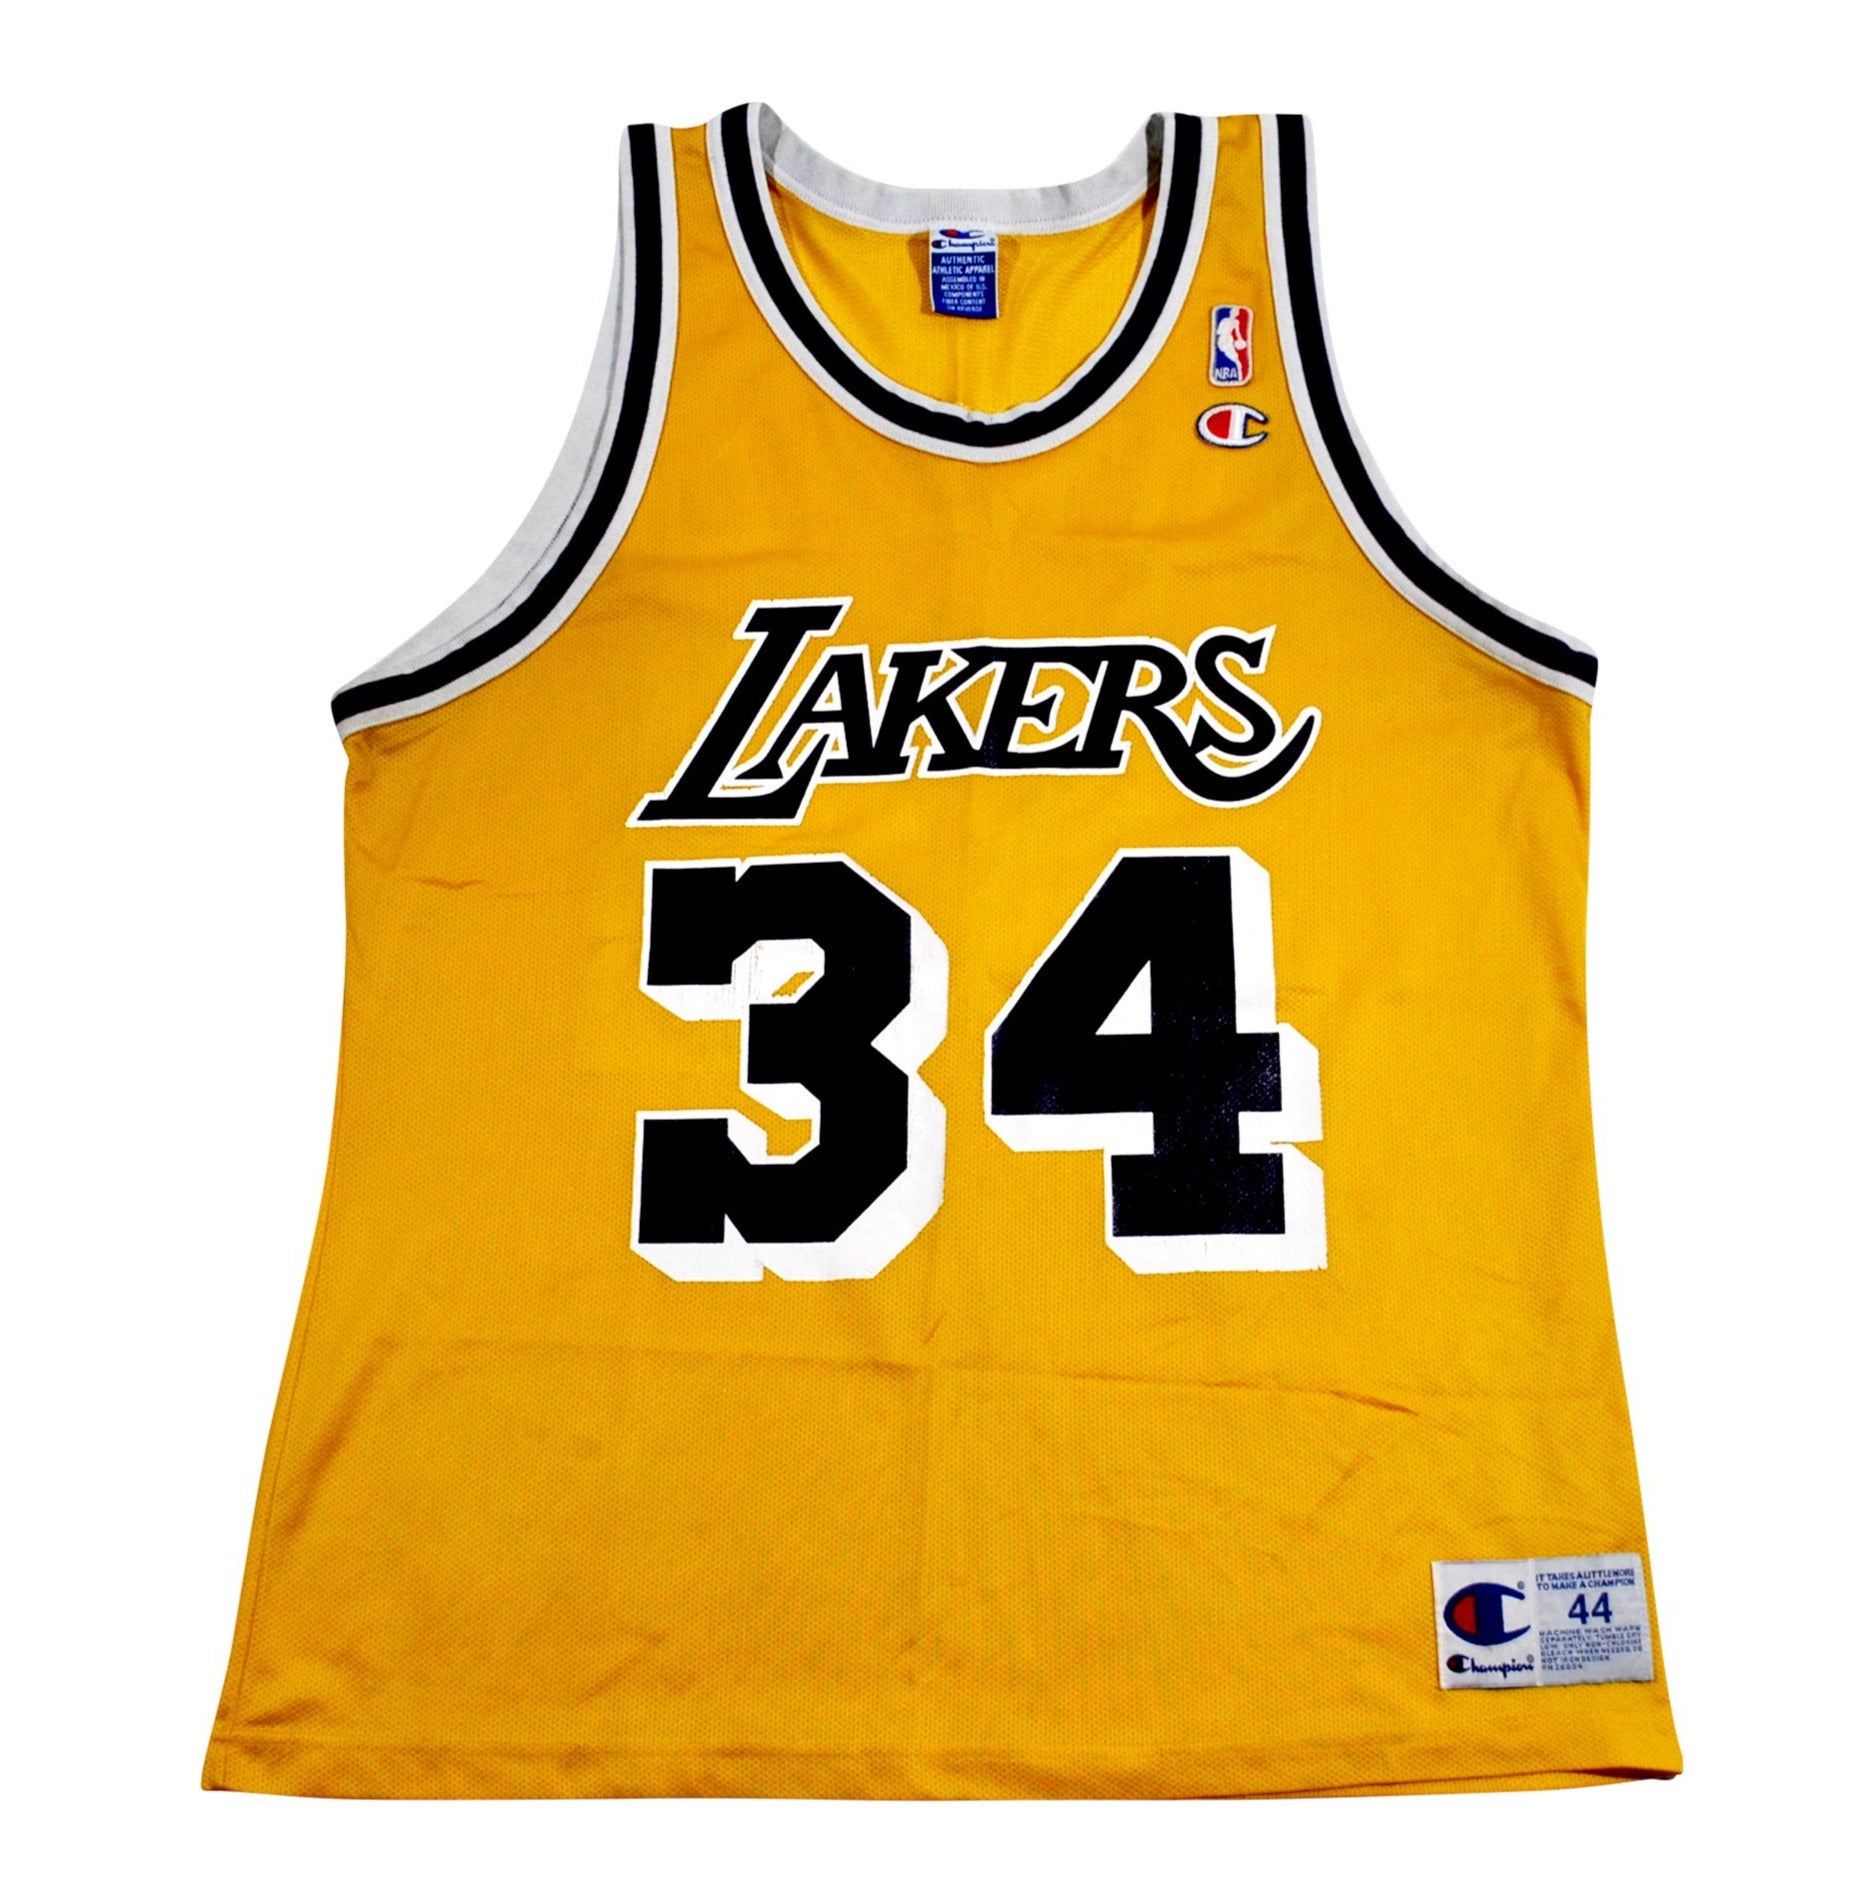 Vintage Nike NBA Los Angeles Lakers Hoodie Sweatshirt Size Large